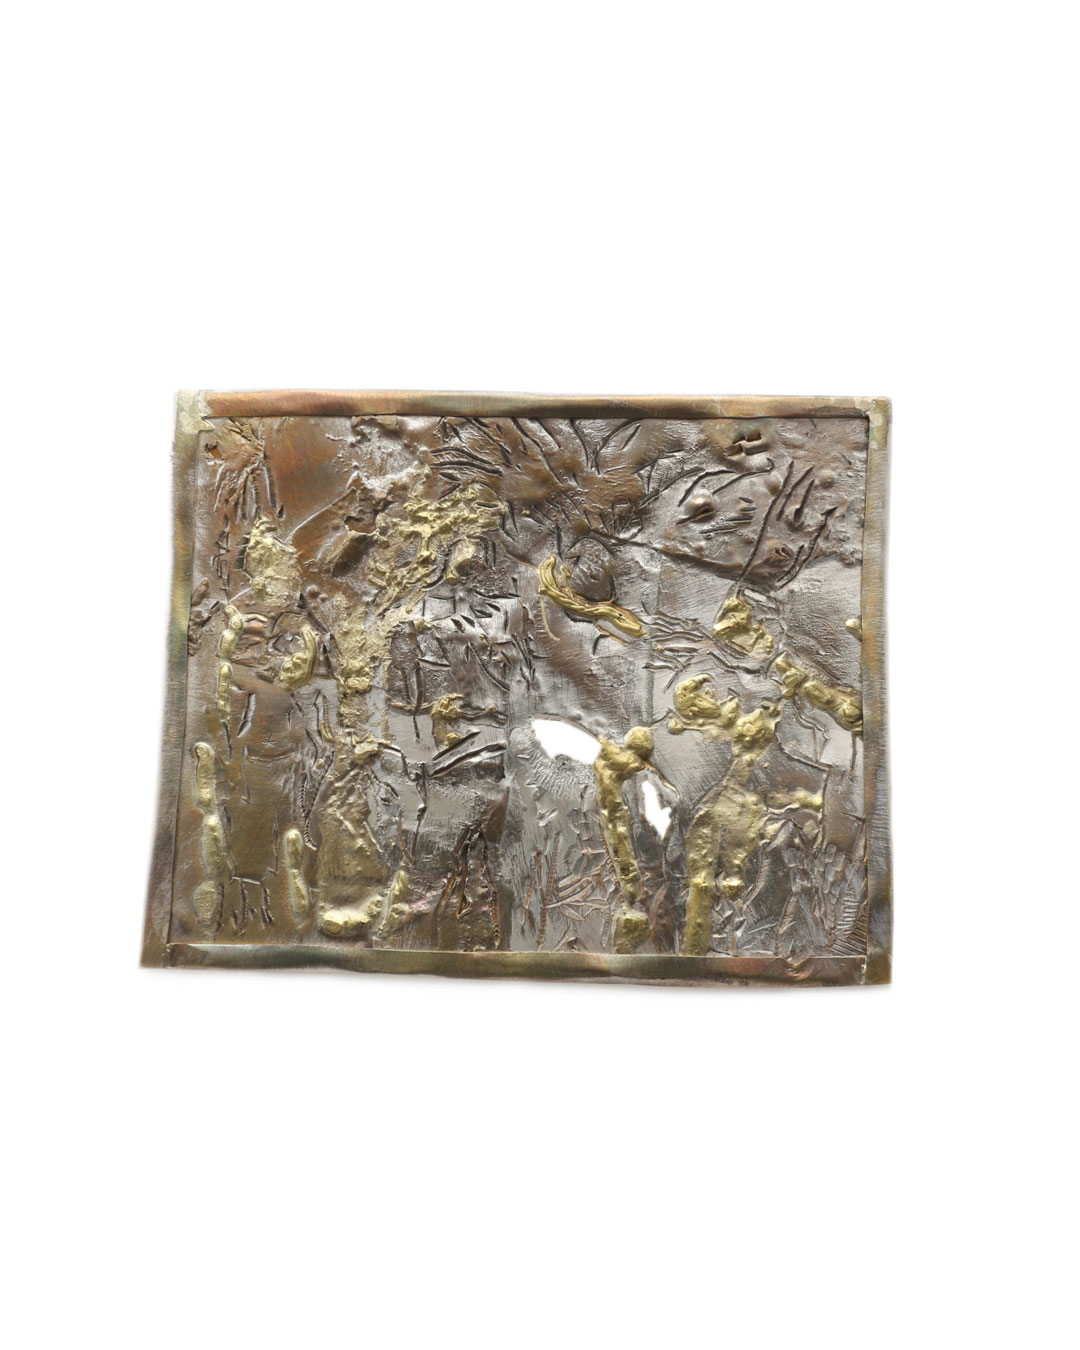 Rudolf Kocéa, Studio Olympia, 2016, broche; zilver, koper, goud, 105 x 130 mm, €2130